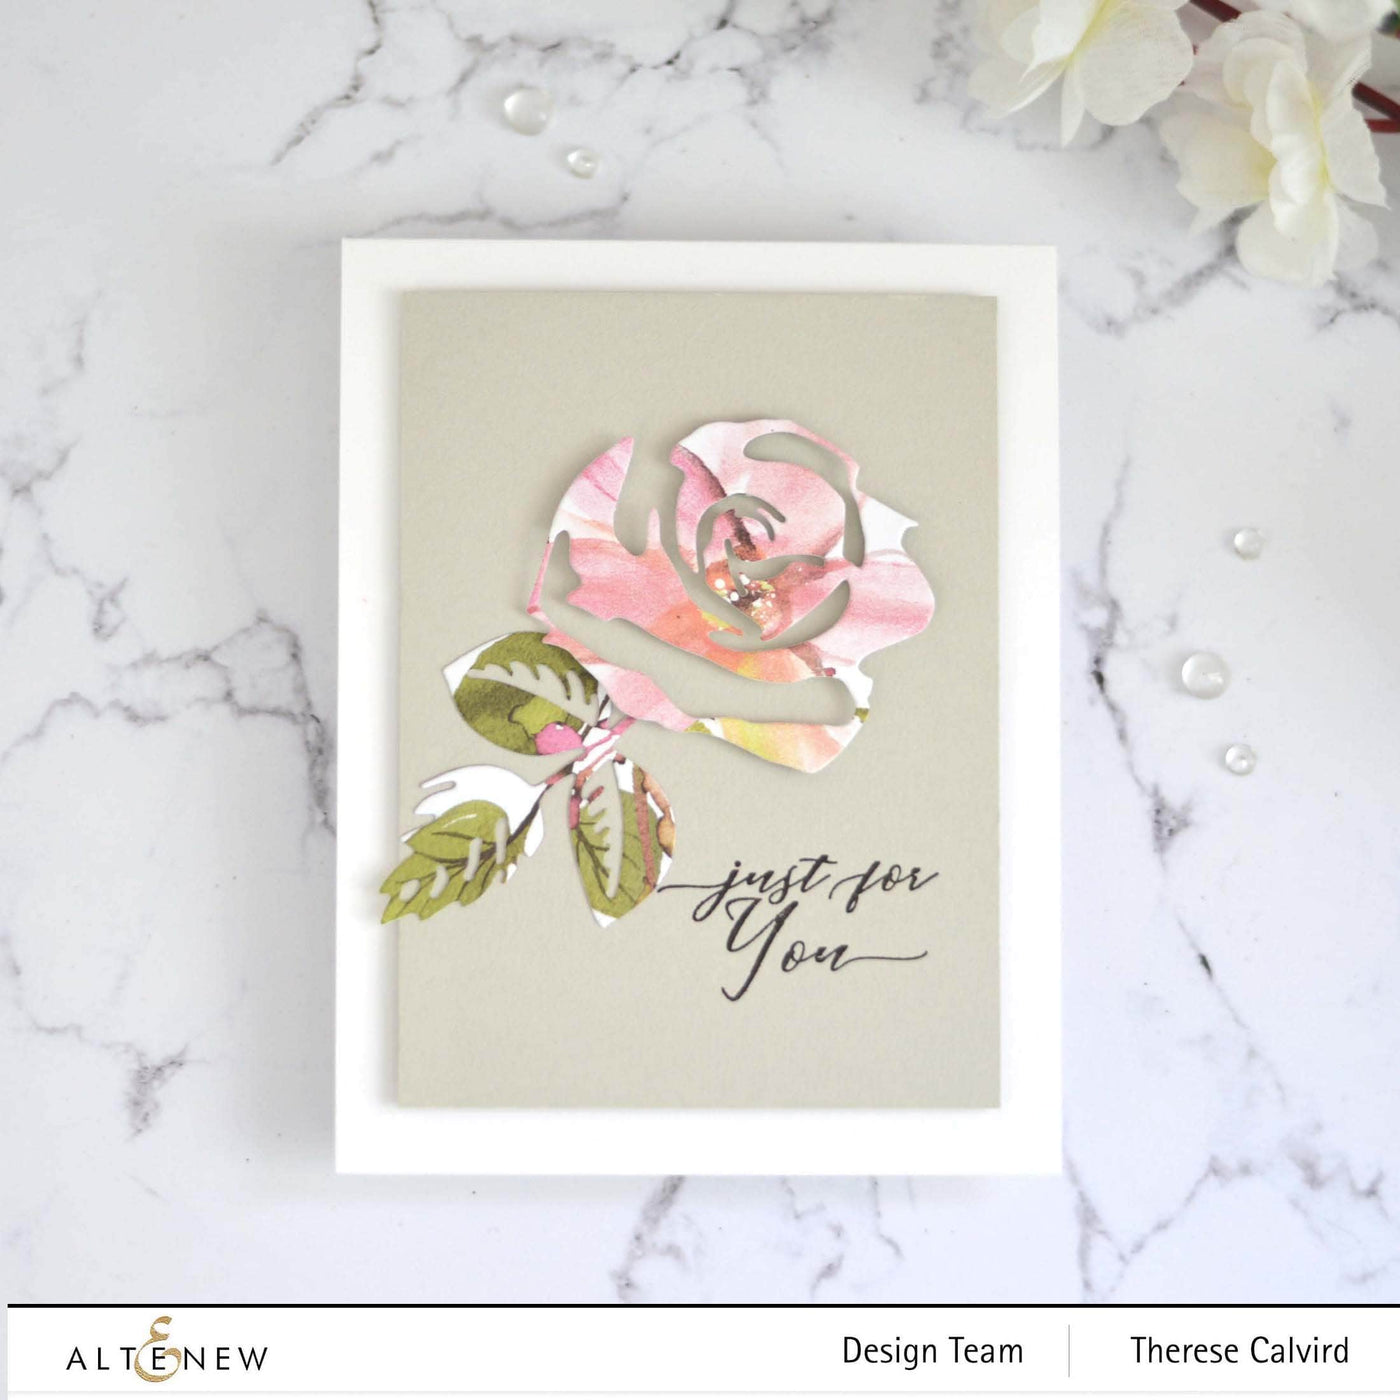 Die & Paper Bundle Craft-A-Flower: Rose Layering Die Set & Gradient Cardstock Bundle